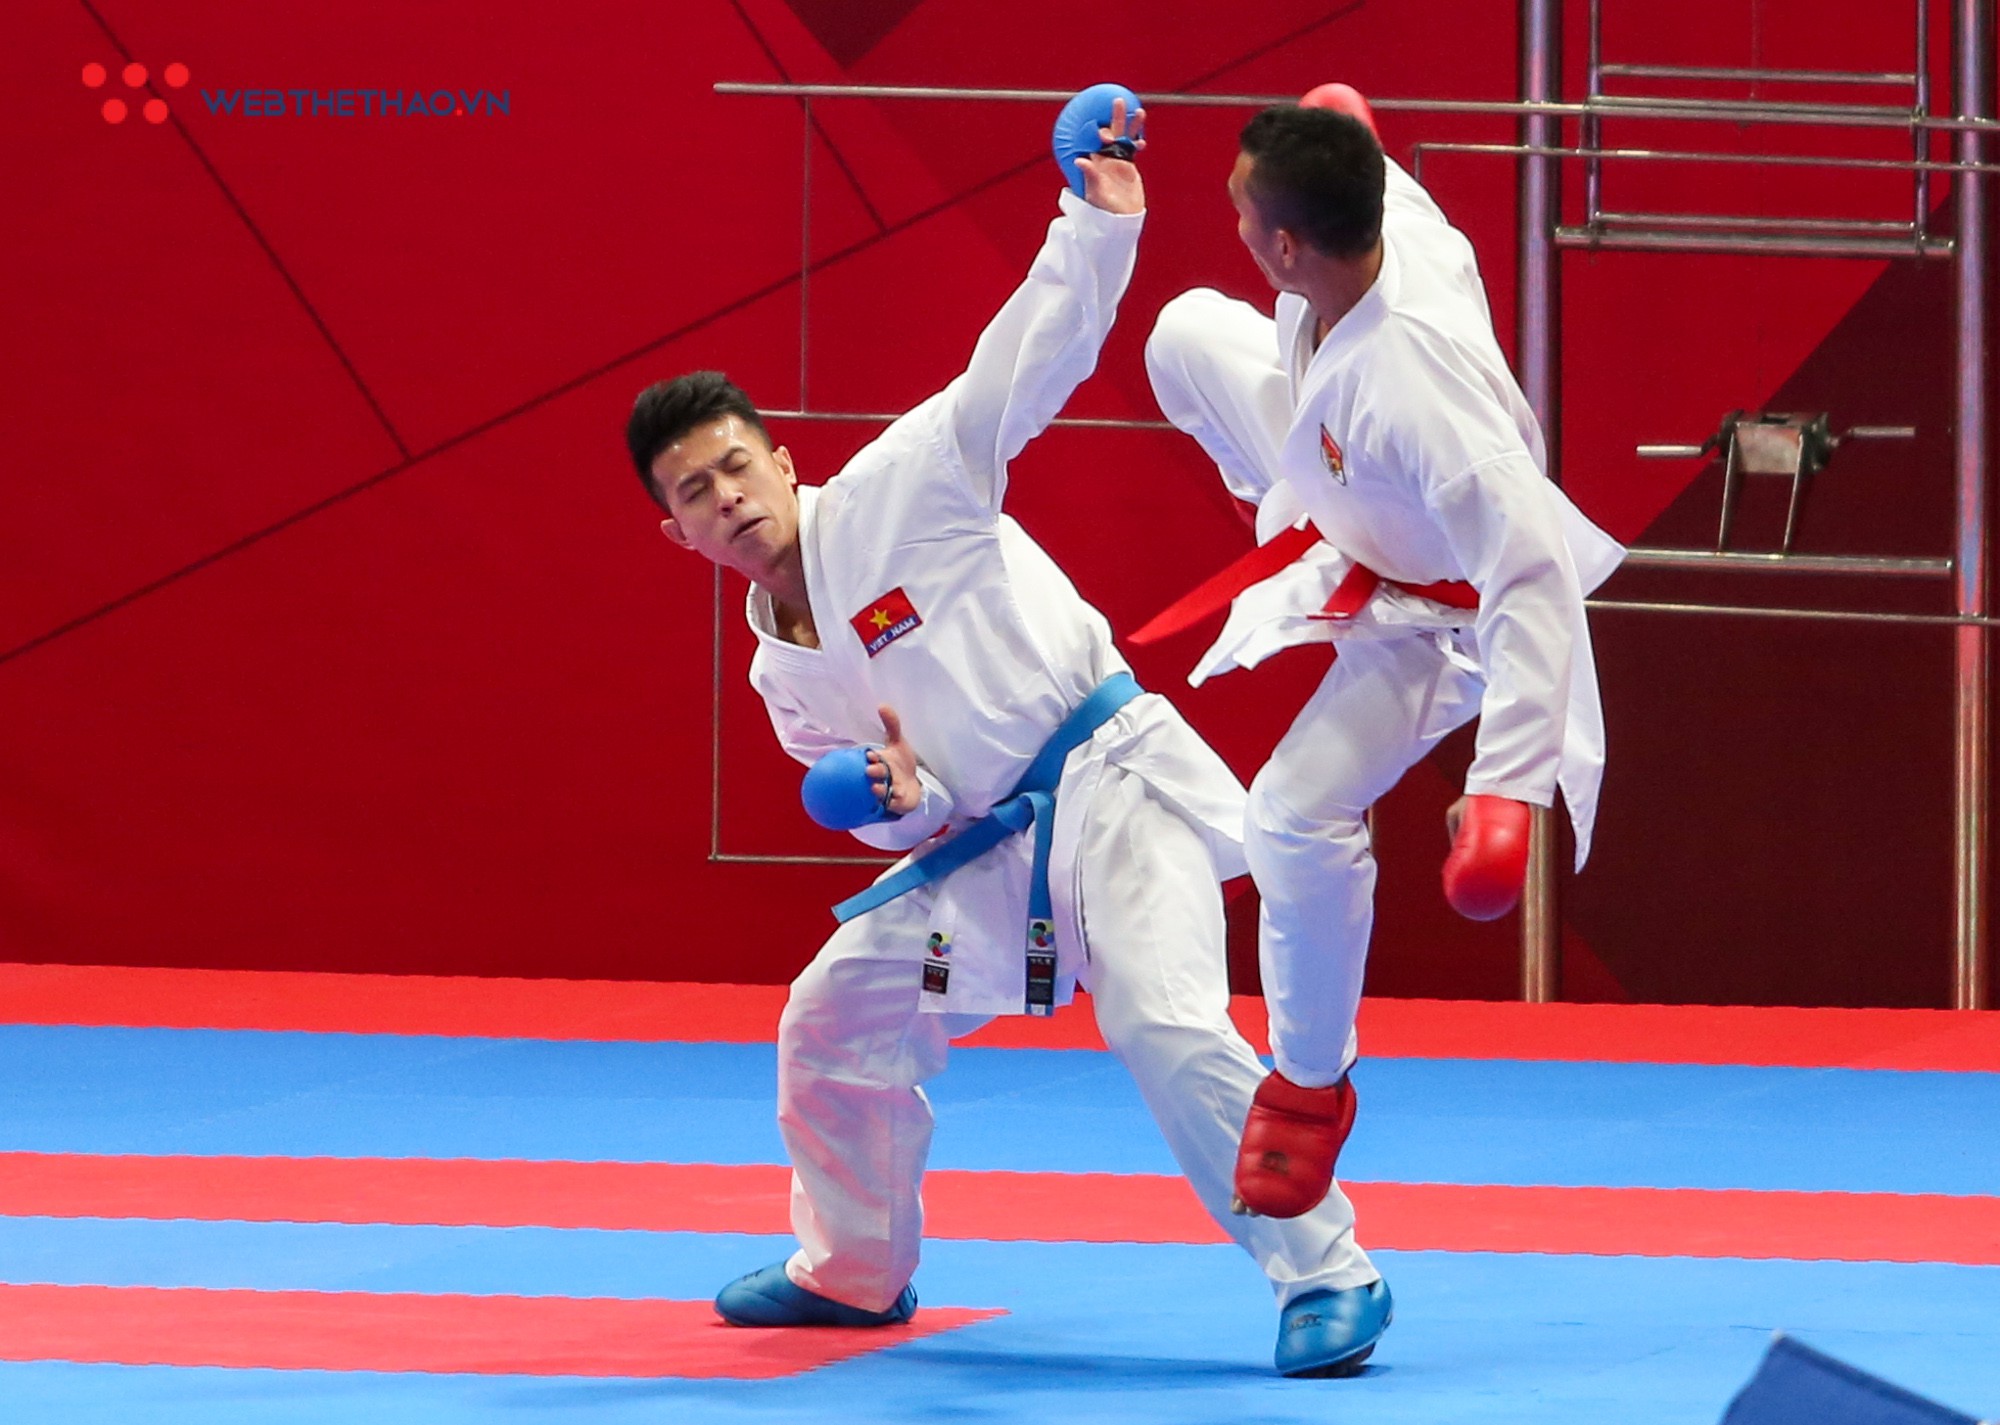 Karate, Pencak Silat Việt Nam thua đau chủ nhà Indonesia tại ASIAD ngày 26/8 - Ảnh 1.